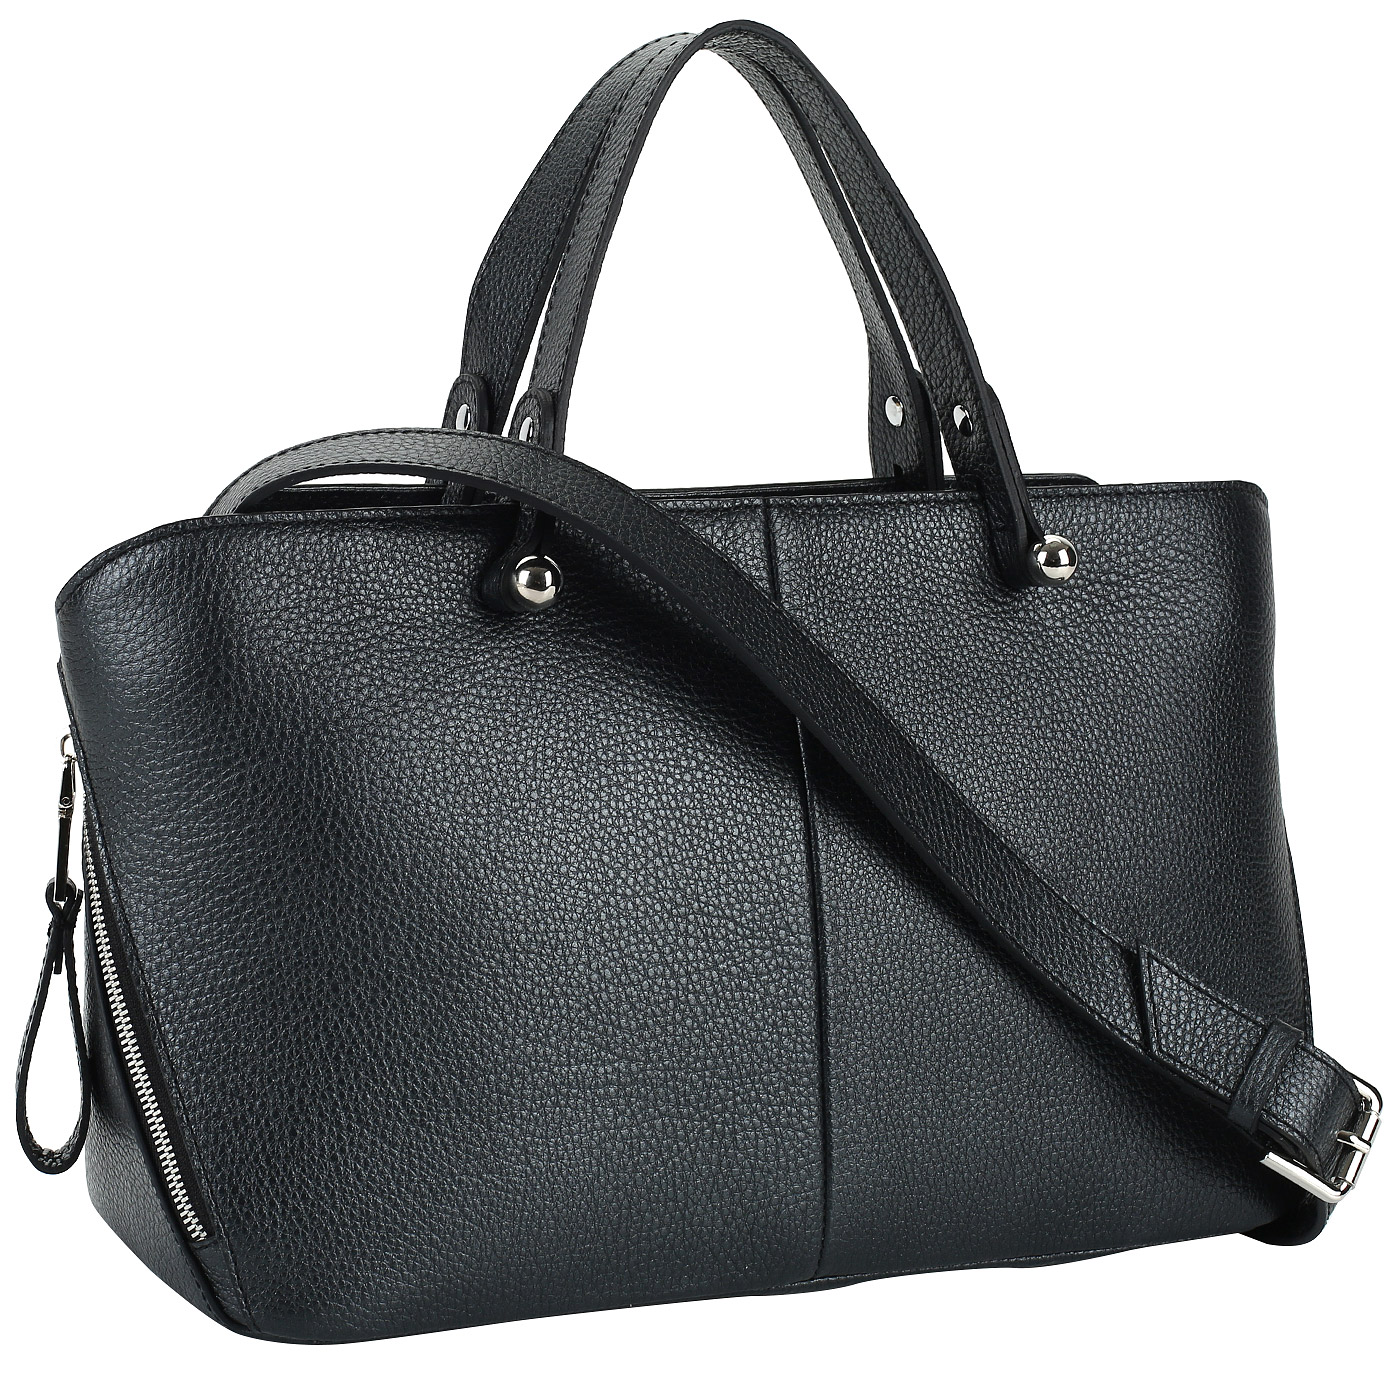 Сумка черная женская. Женская сумка Gabor 8133-50. Maryam fir565 сумки женские черная. Терволина черная классическая сумка. Женская сумка Gabor 8542-60.